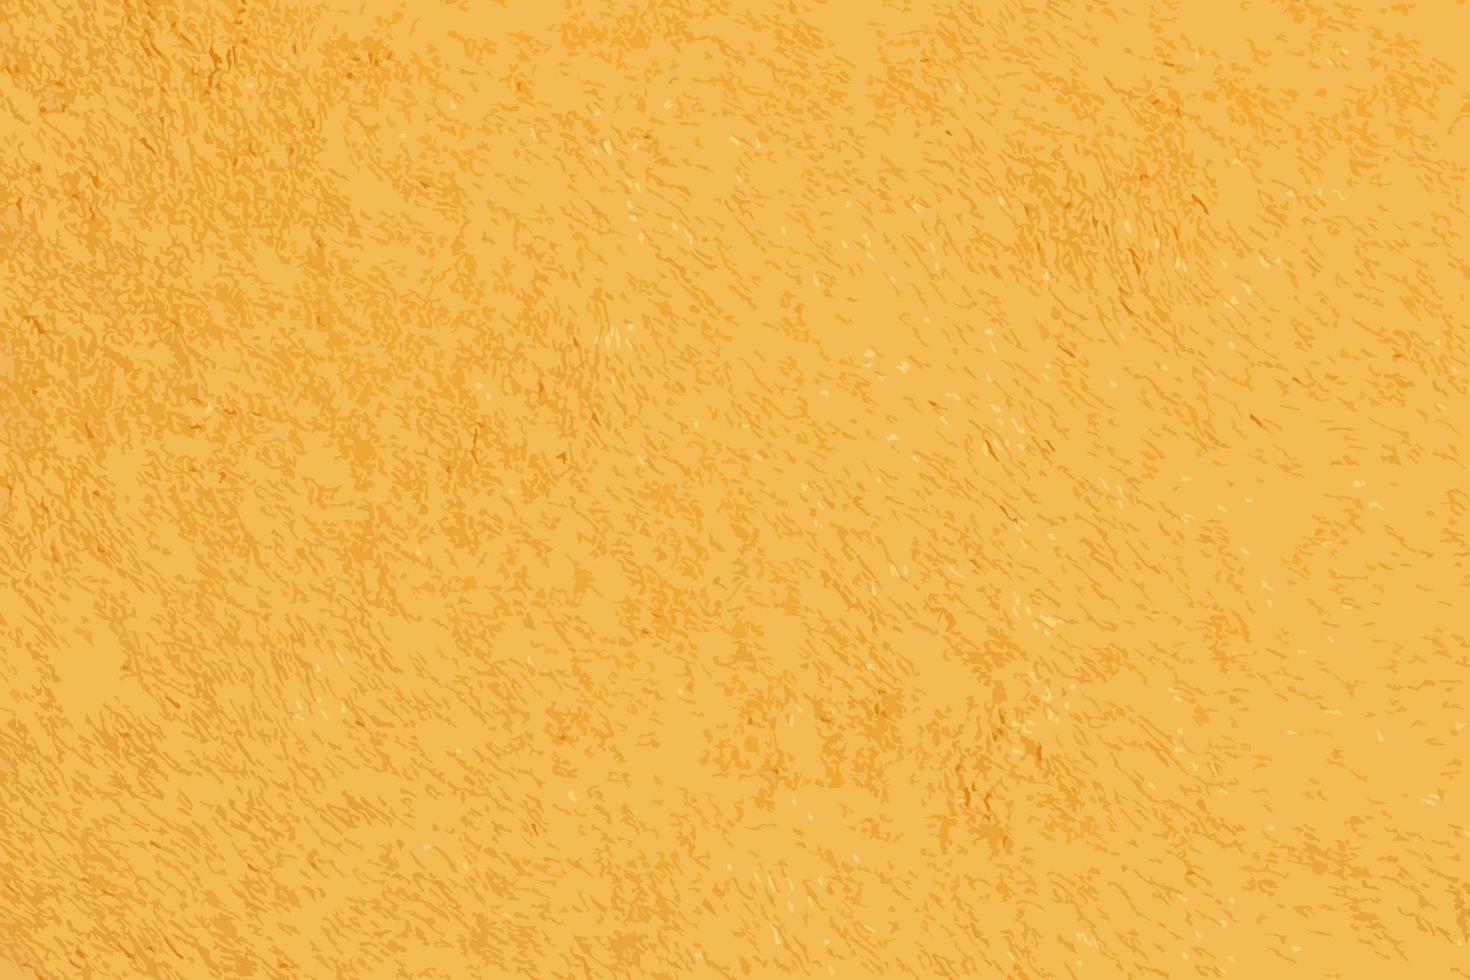 realistische vektorillustration des gelben frotteestoffs für handtücher. gelbes stoff- und texturkonzept. Frotteehandtuch hautnah. vektor